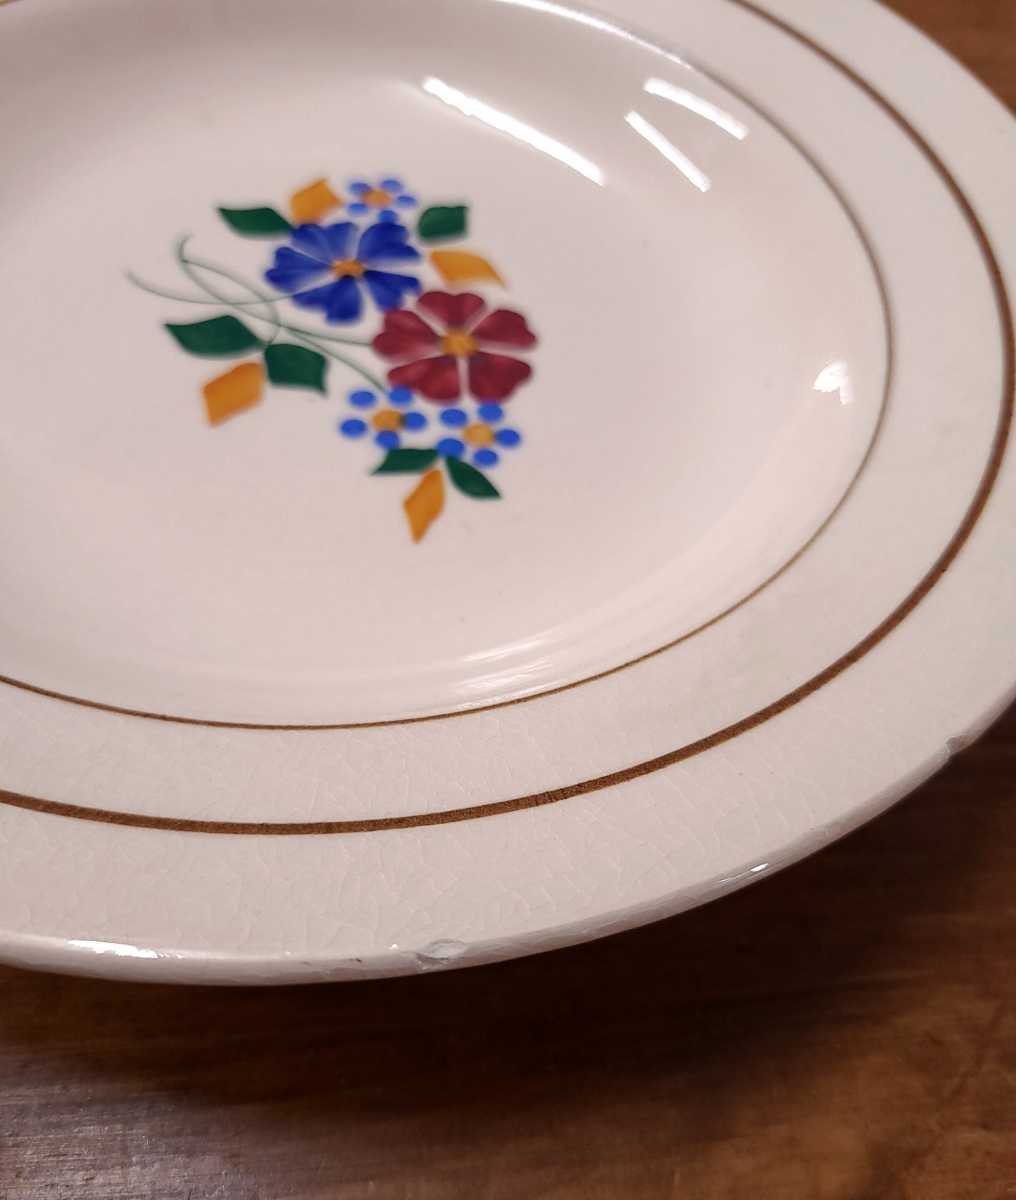  Франция античный солнечный ta man цветочный принт тарелка 7 шт. комплект plate 22cm st.amand Cafe интерьер посуда B2